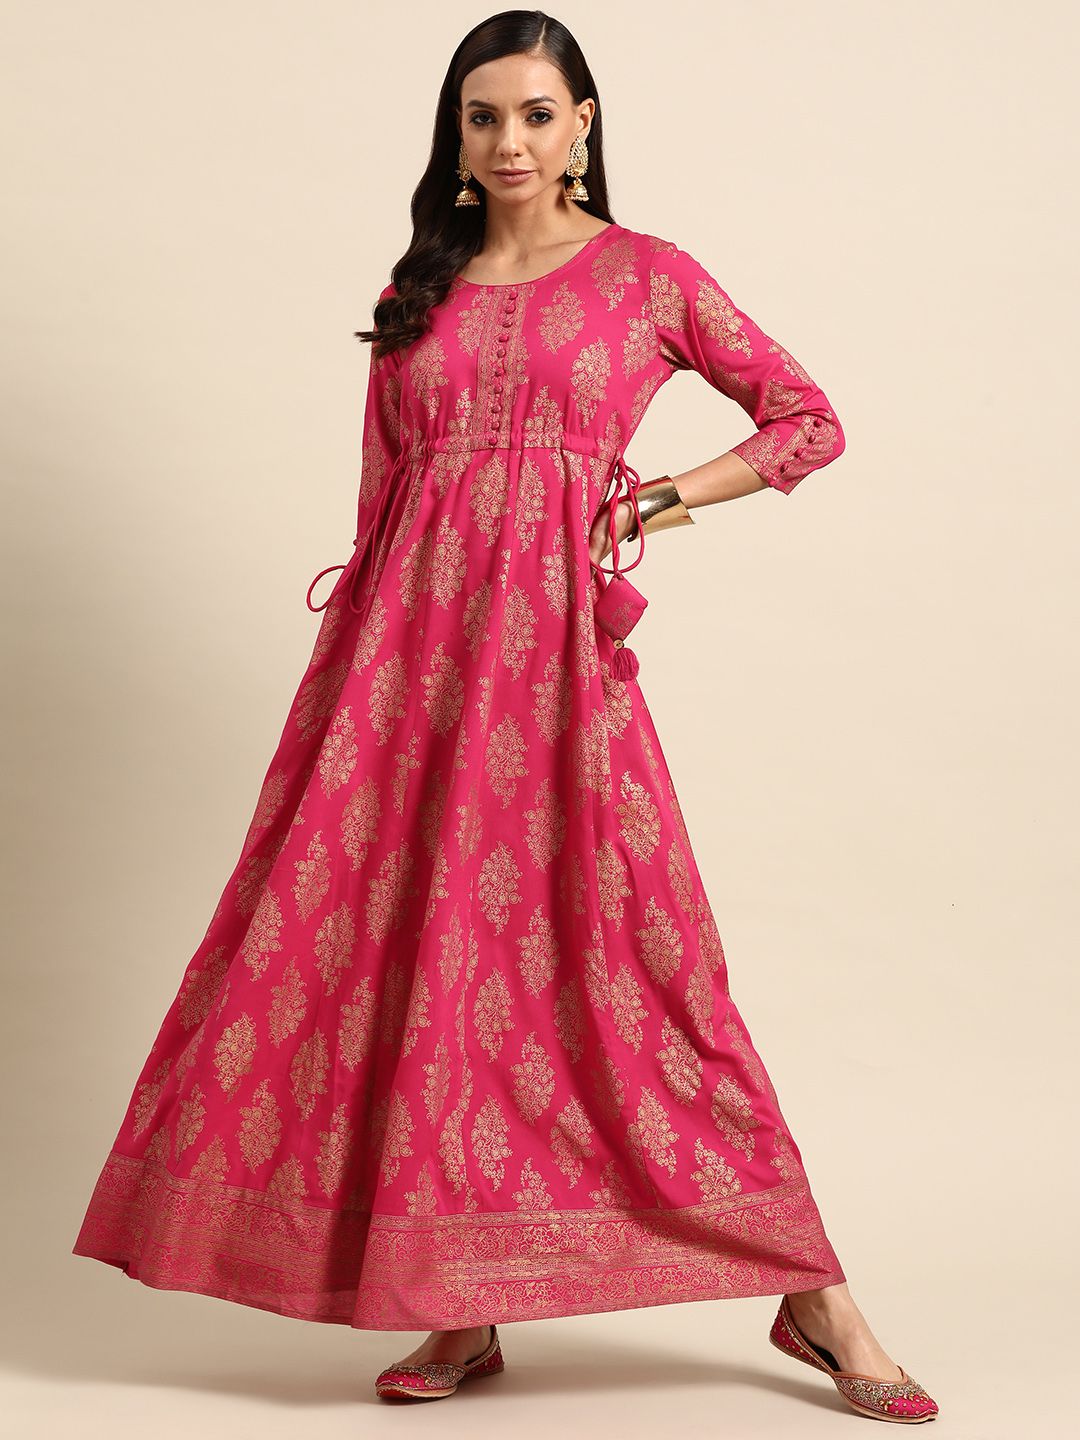 GERUA Magenta & Gold-Toned Ethnic Motifs Ethnic Maxi Dress Price in India